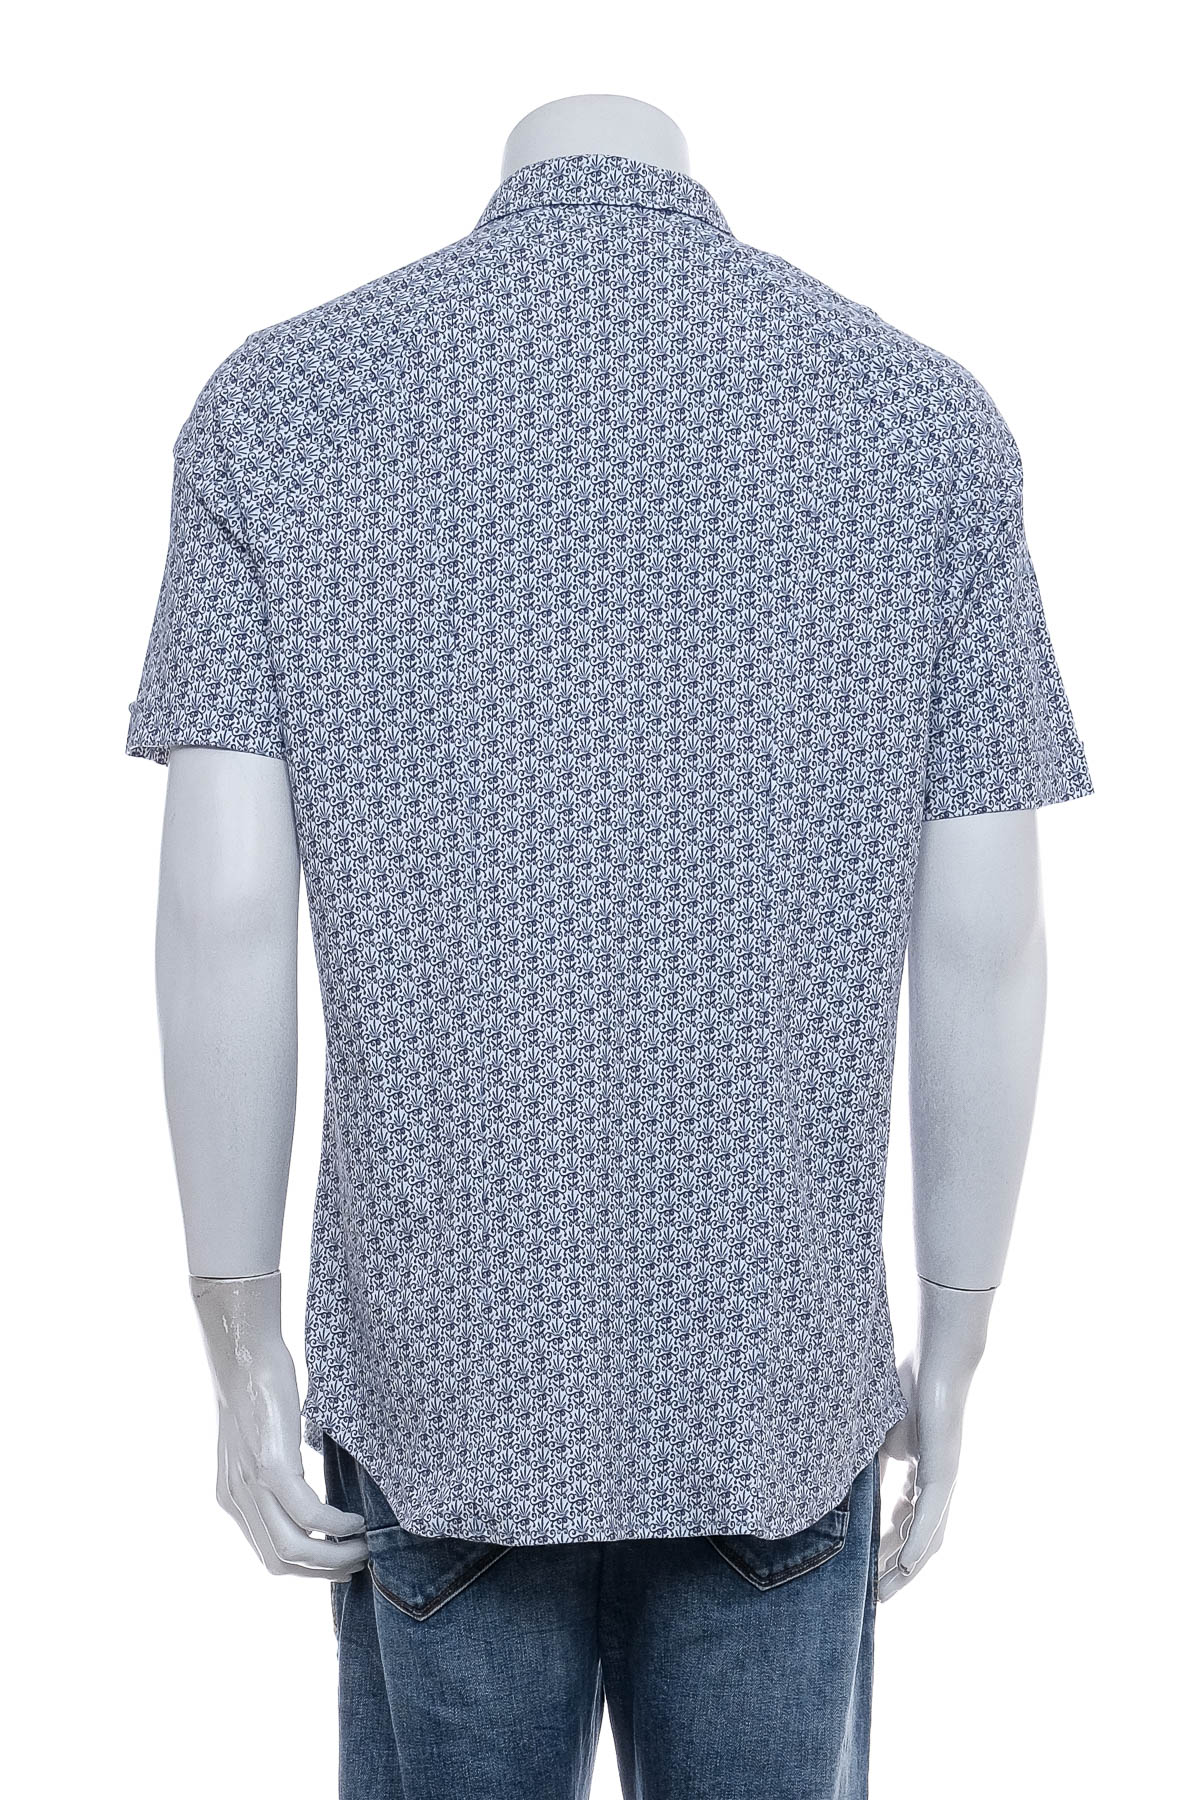 Ανδρικό πουκάμισο - Desoto - 1